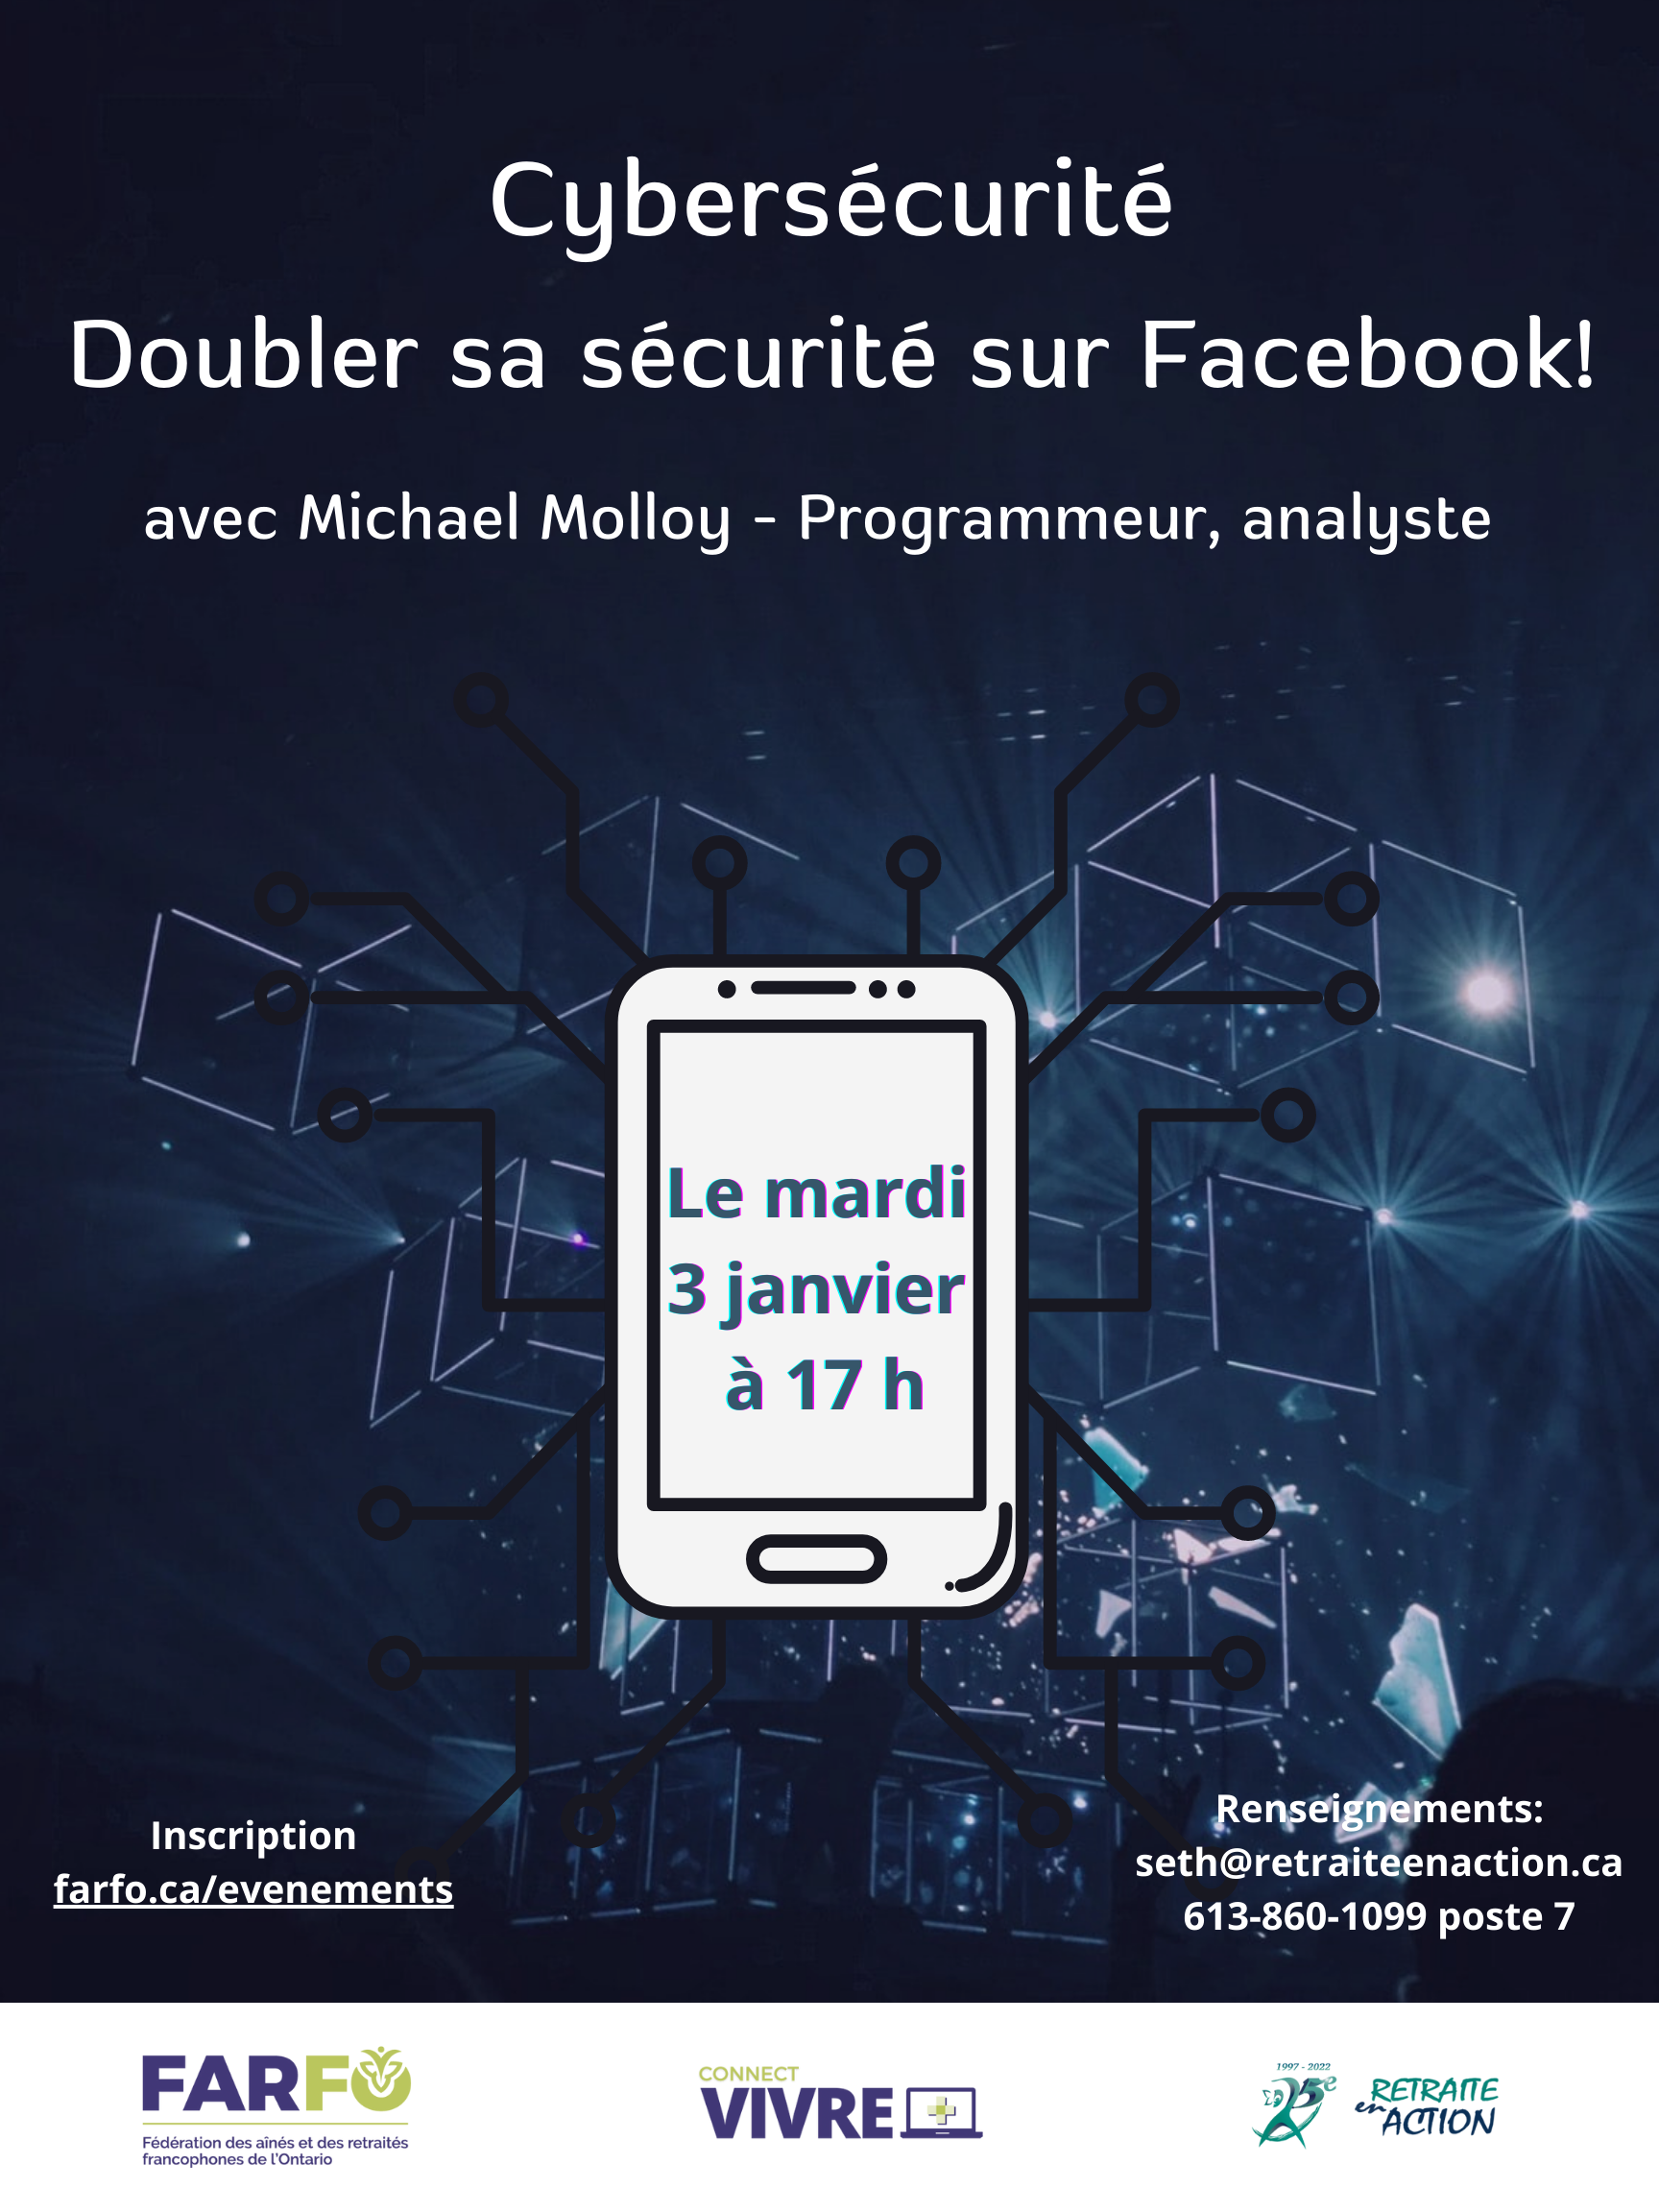 Cybersecurite Doubler sa securite sur Facebook Farfo